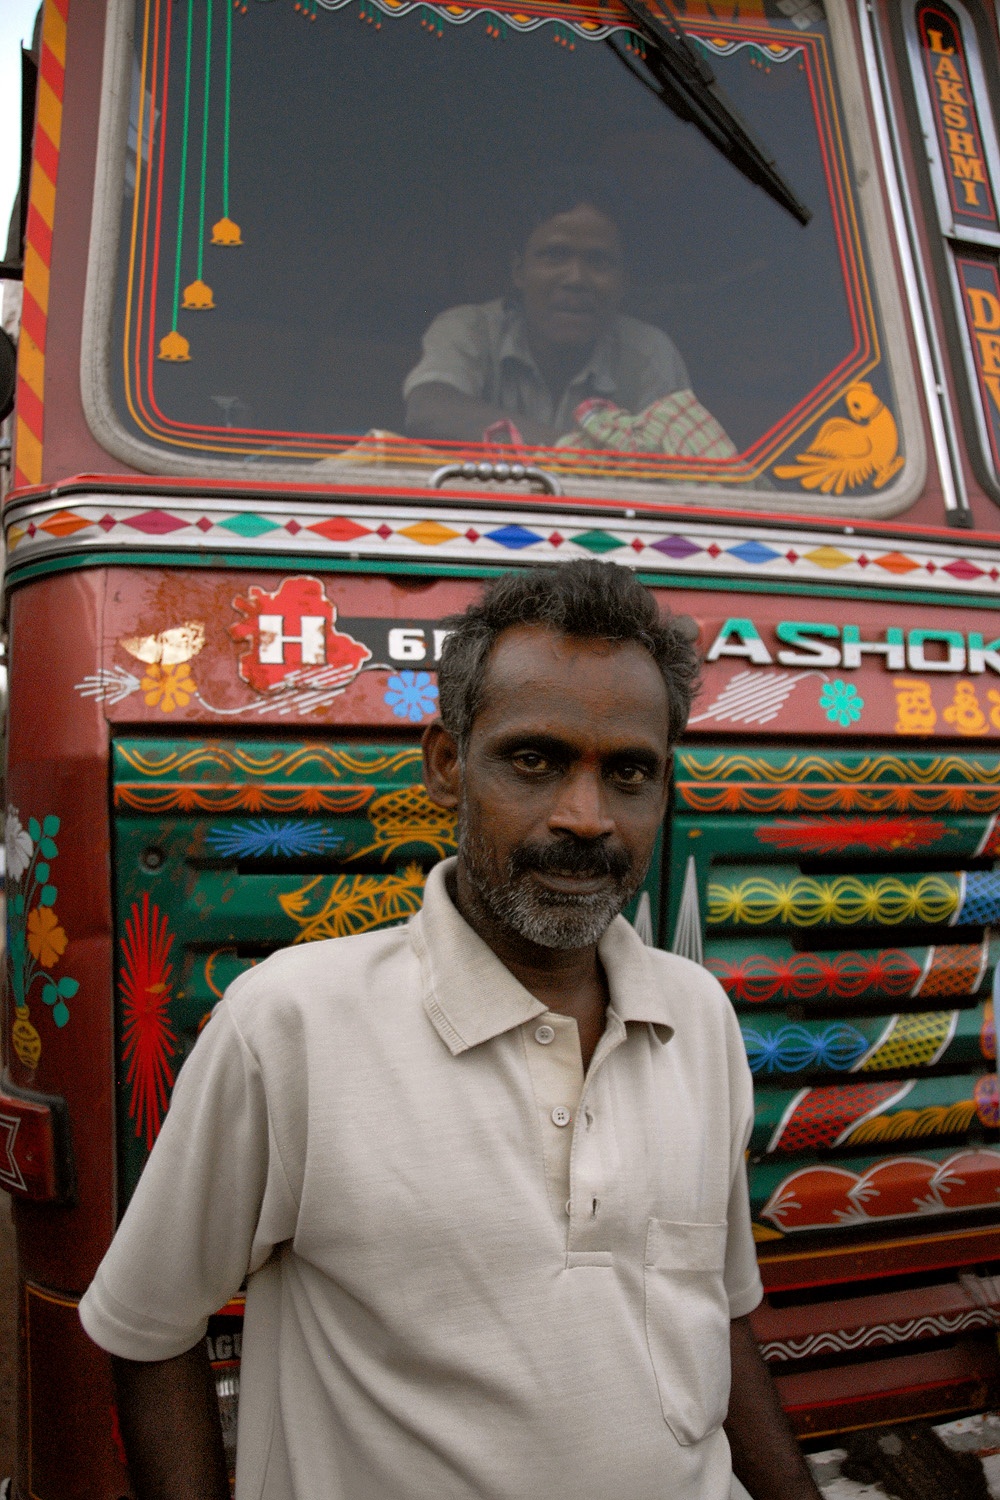 bill-hocker-truck-drivers-near-cuttack-india-2007